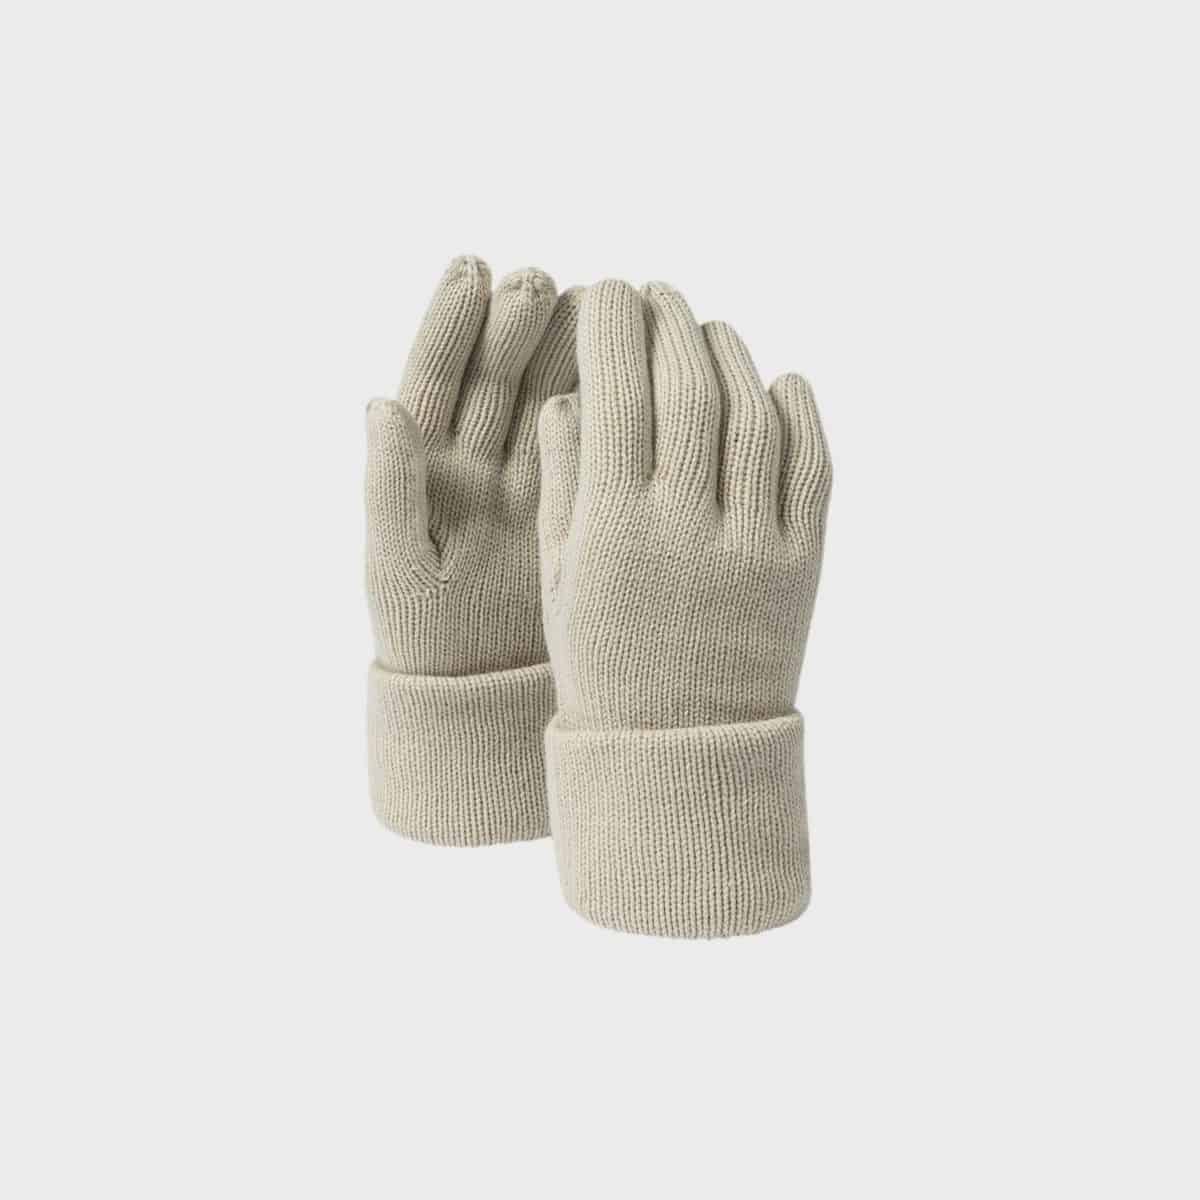 handschuhe-fine-knitted-gloves-sand-kaufen-besticken_stickmanufaktur